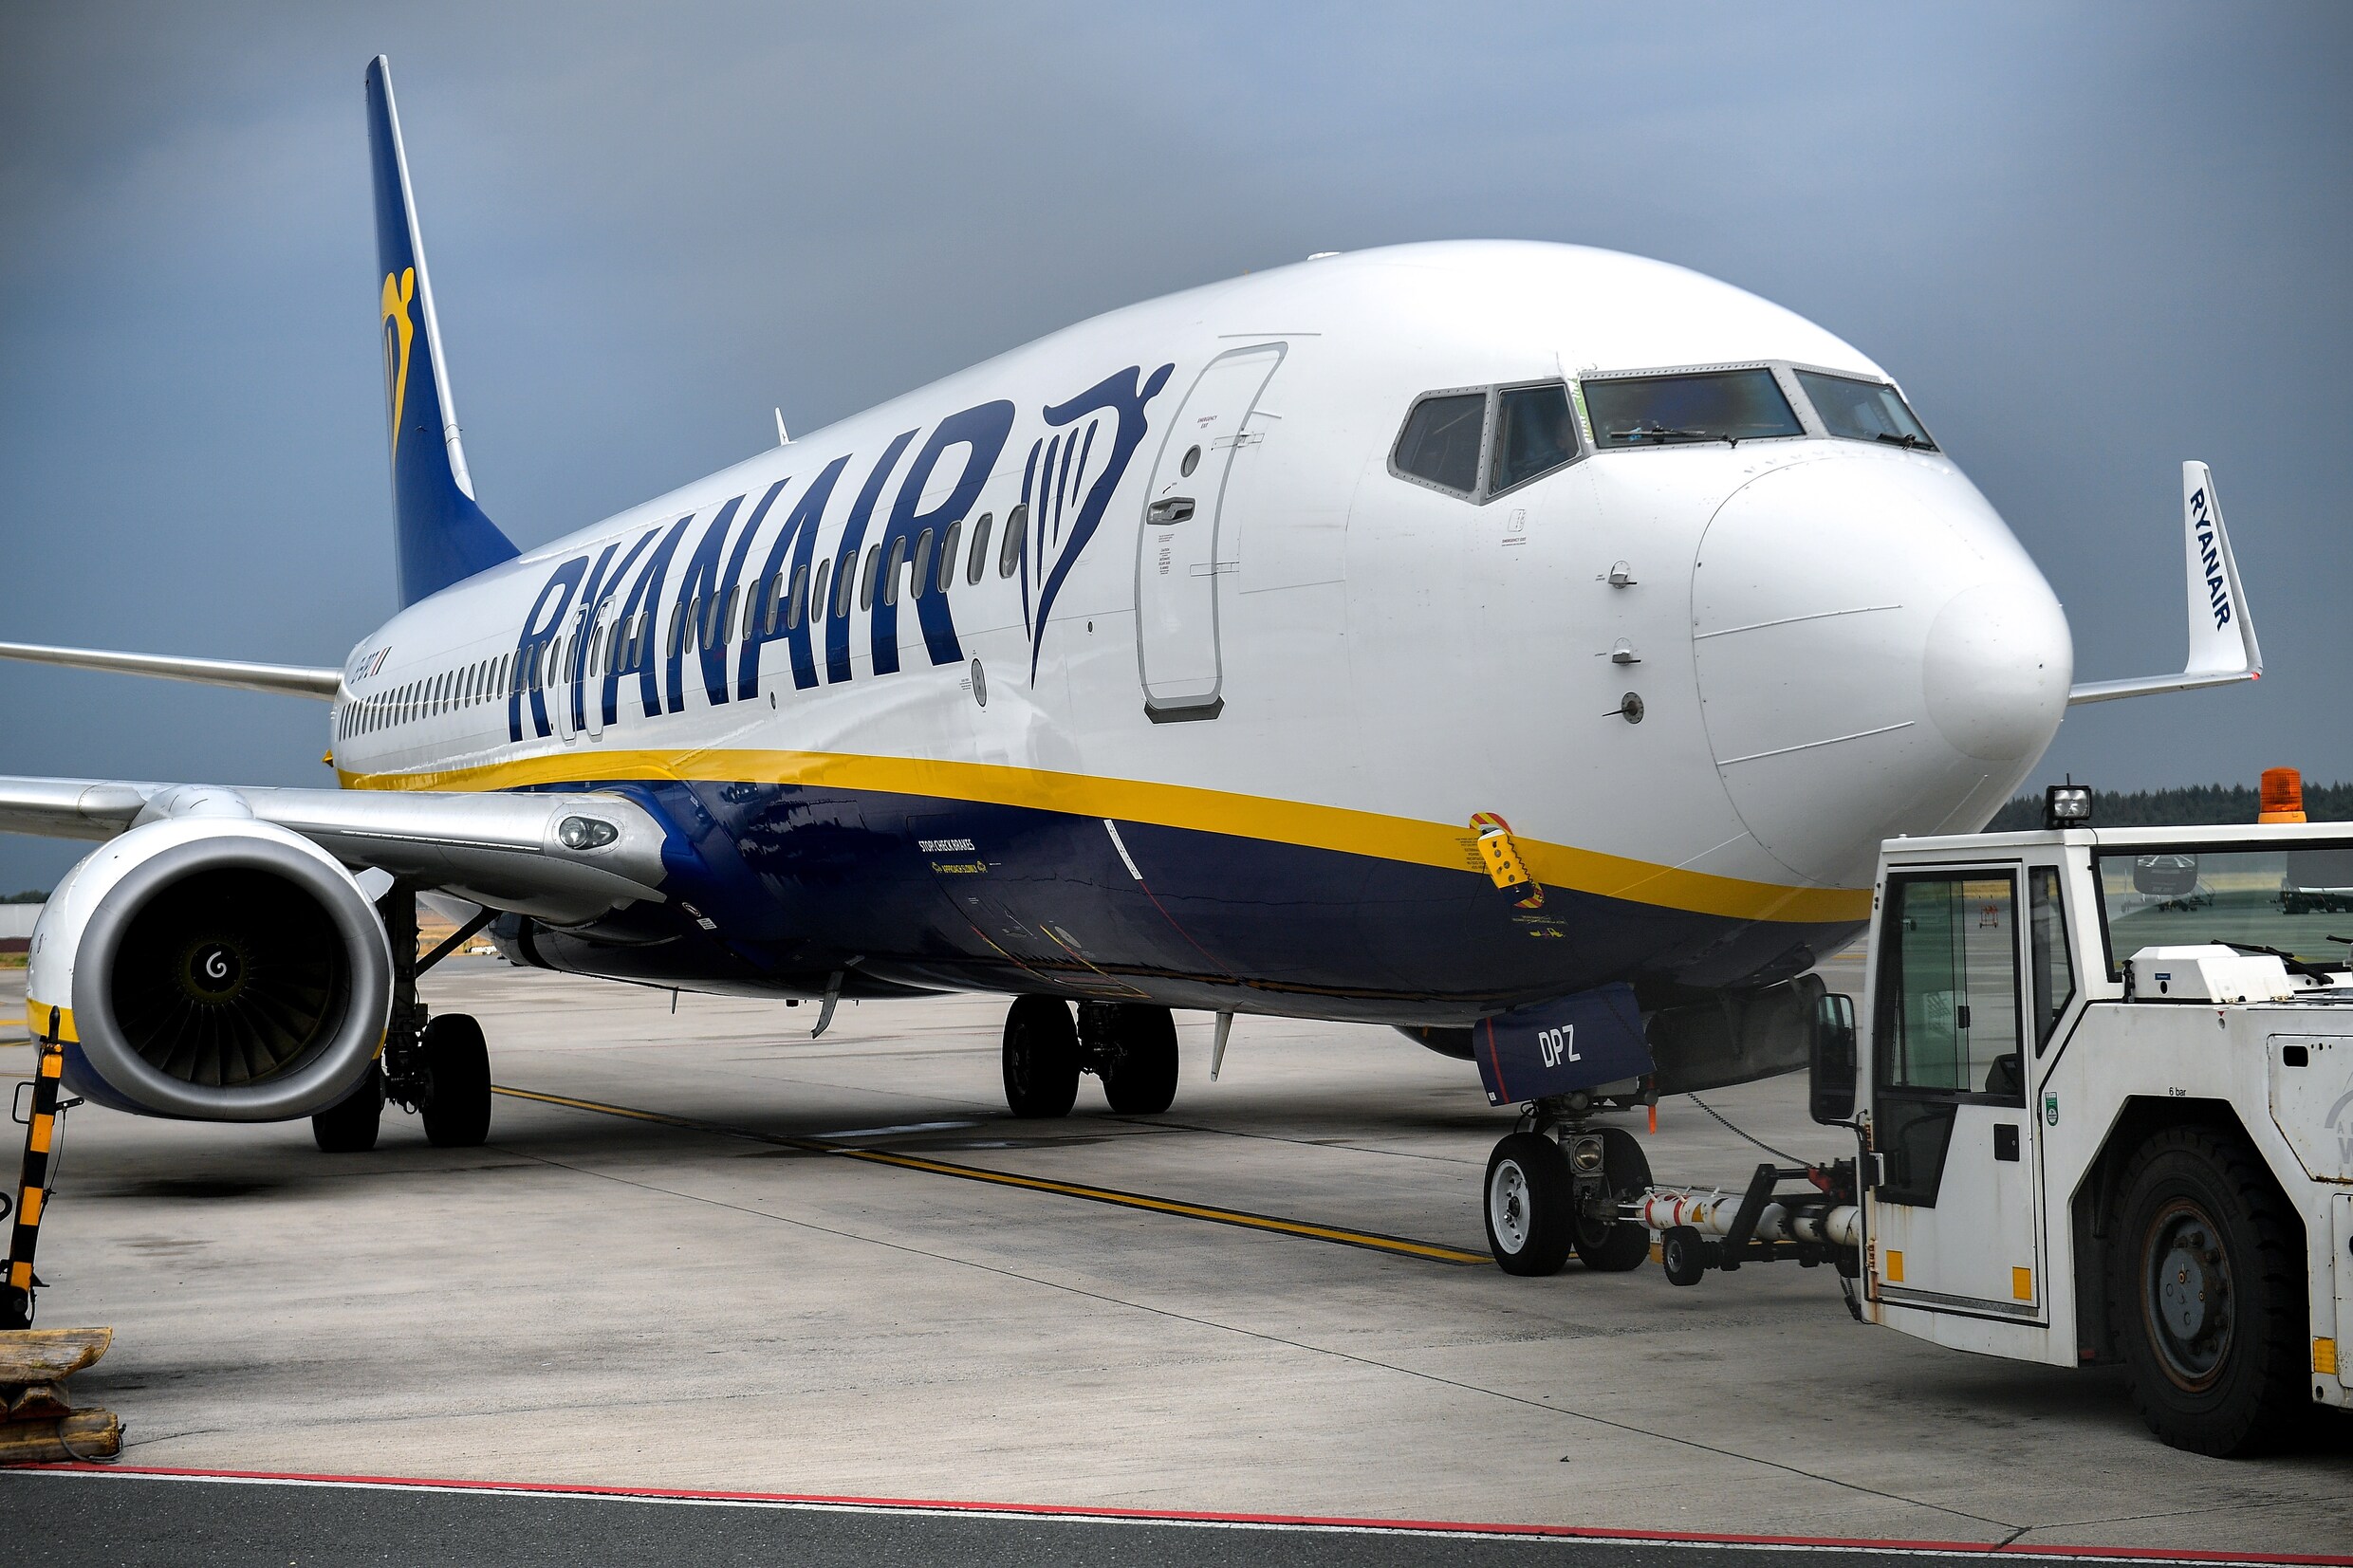 Cabinepersoneel Ryanair dreigt met "grootste staking ooit" eind september